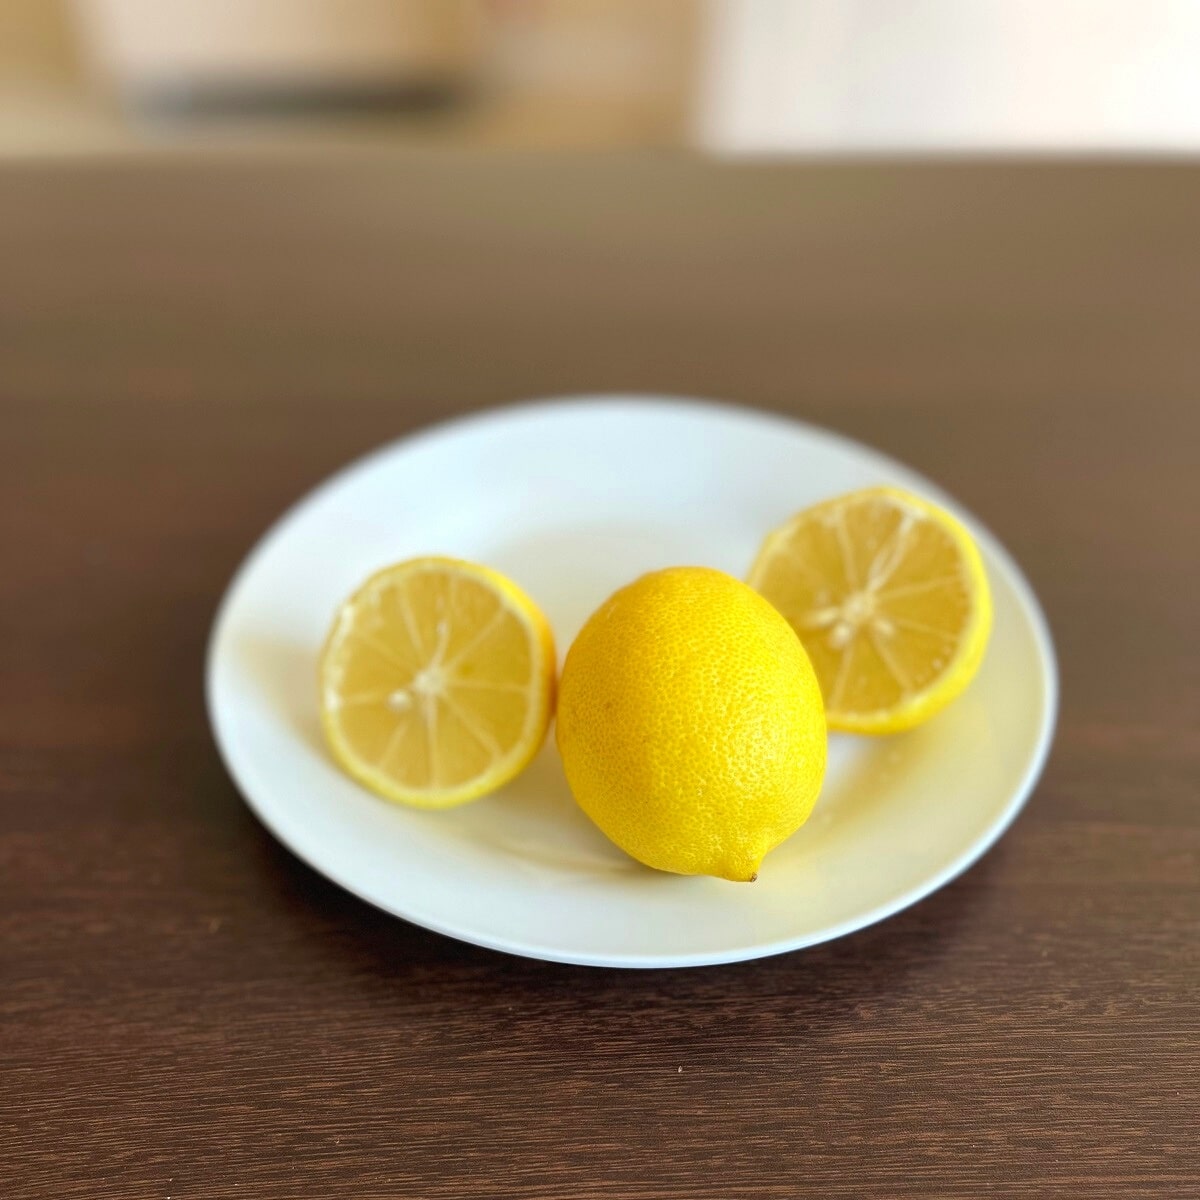 Sliced lemons on plate